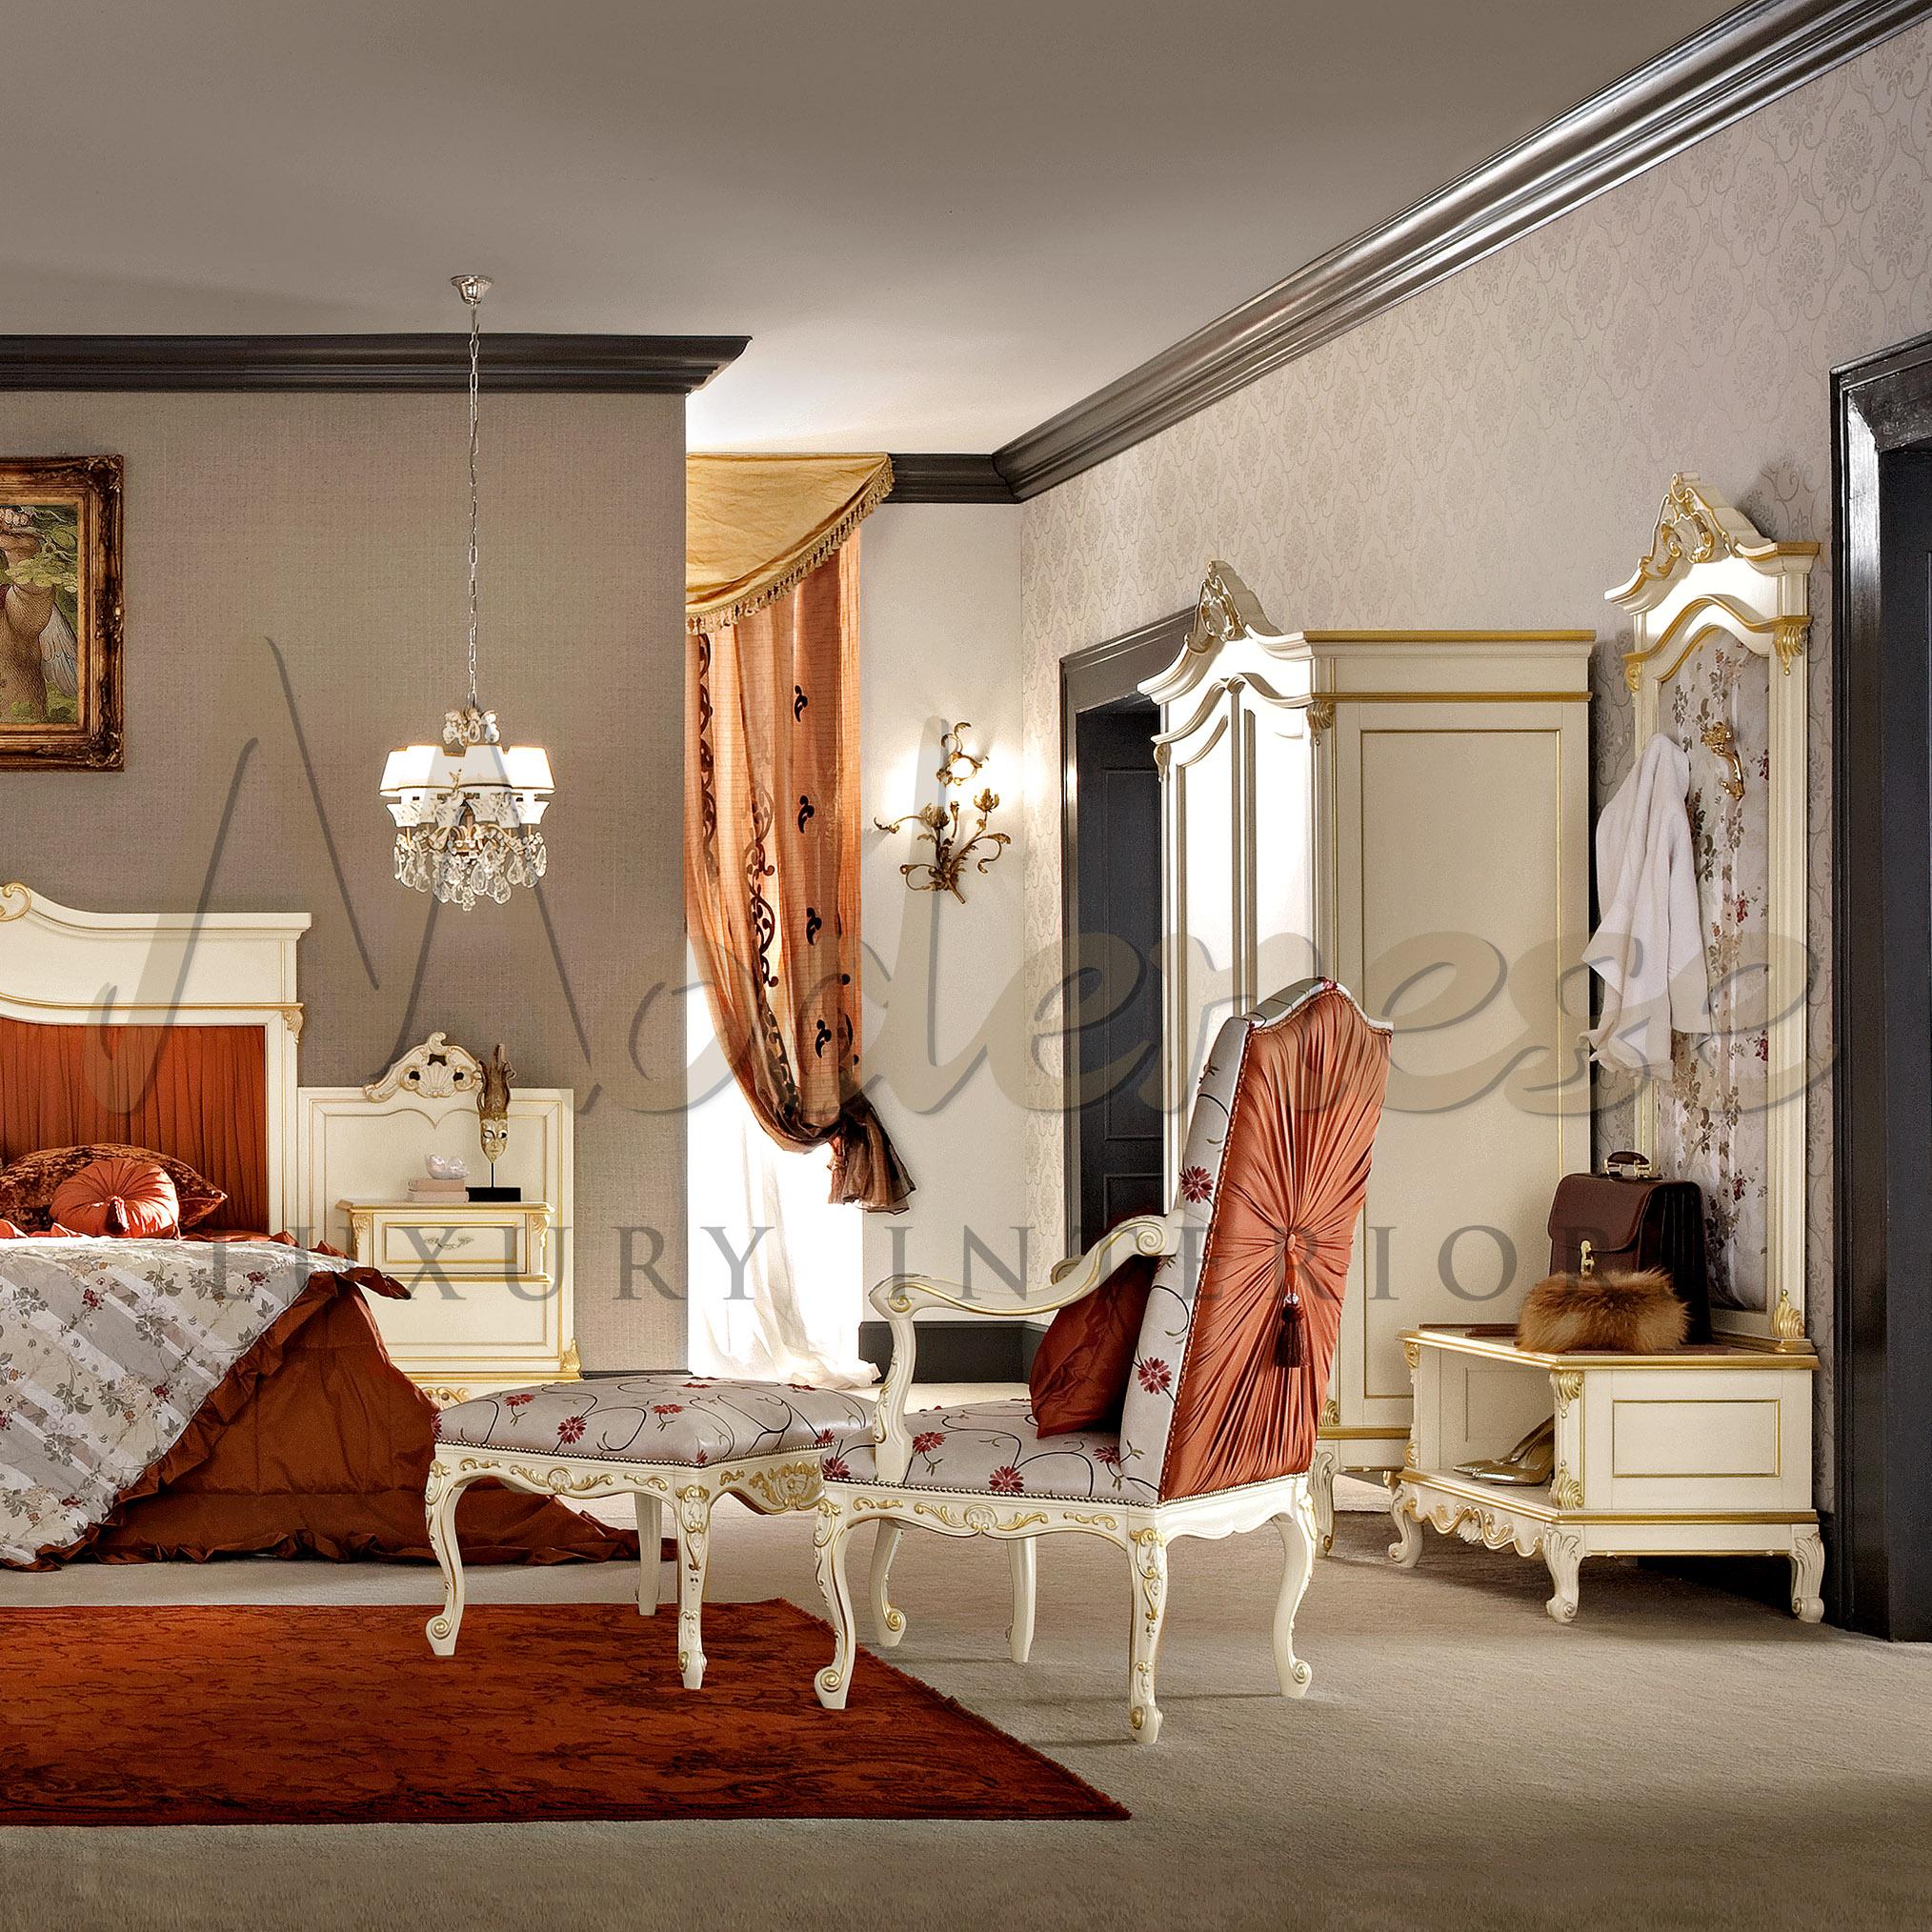 Verschönern Sie Ihr Villenprojekt mit der weichen Polsterung dieses stilvollen Hockers von Modenese Interiors, einem hochwertigen Möbelhersteller aus Padua, Italien. Dieser präzise Artikel hat eine blütenweiße Polsterung, die sich auf einen